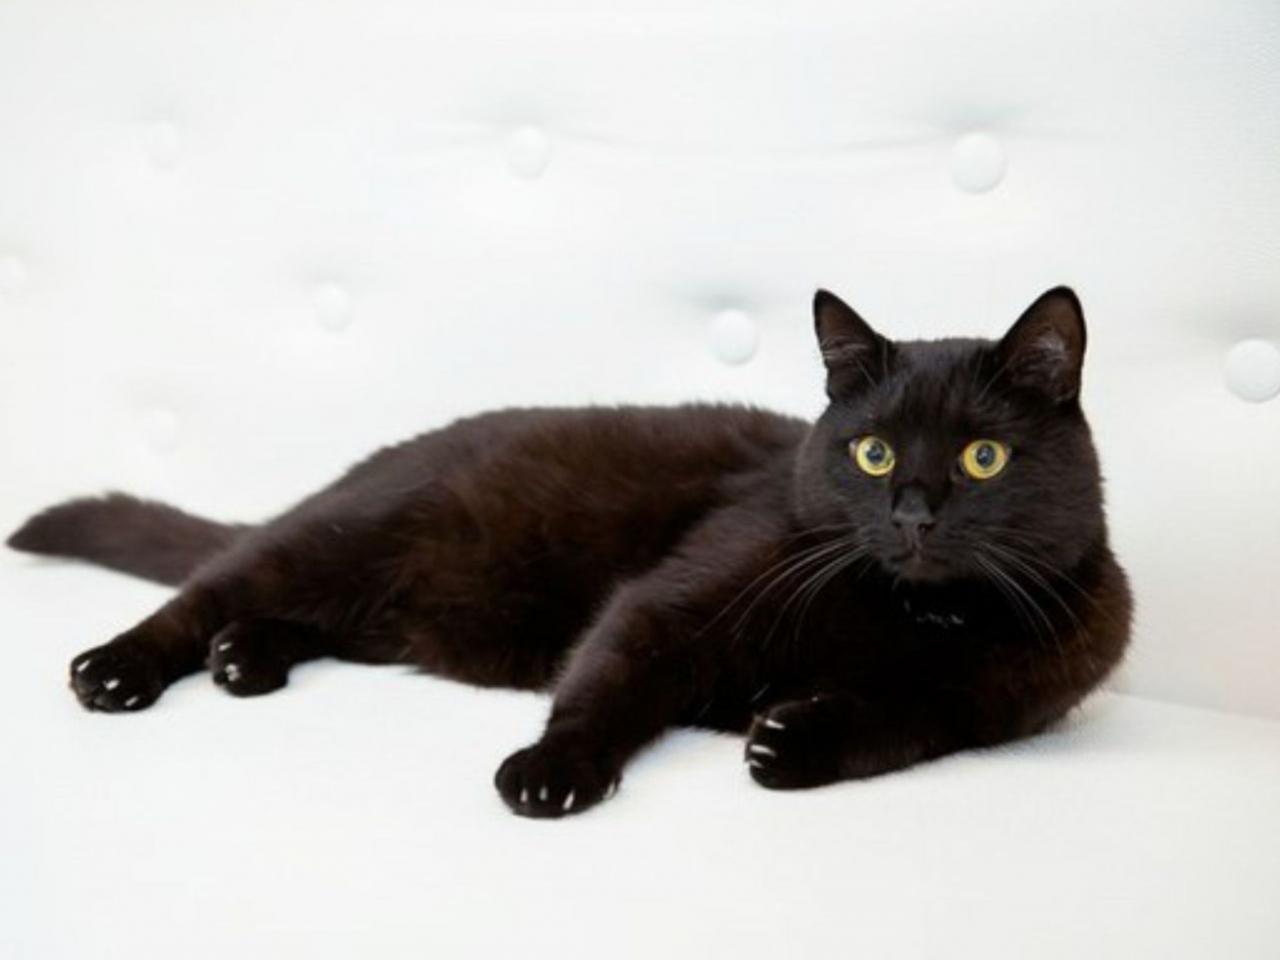 обои Просто чёрный кот фото